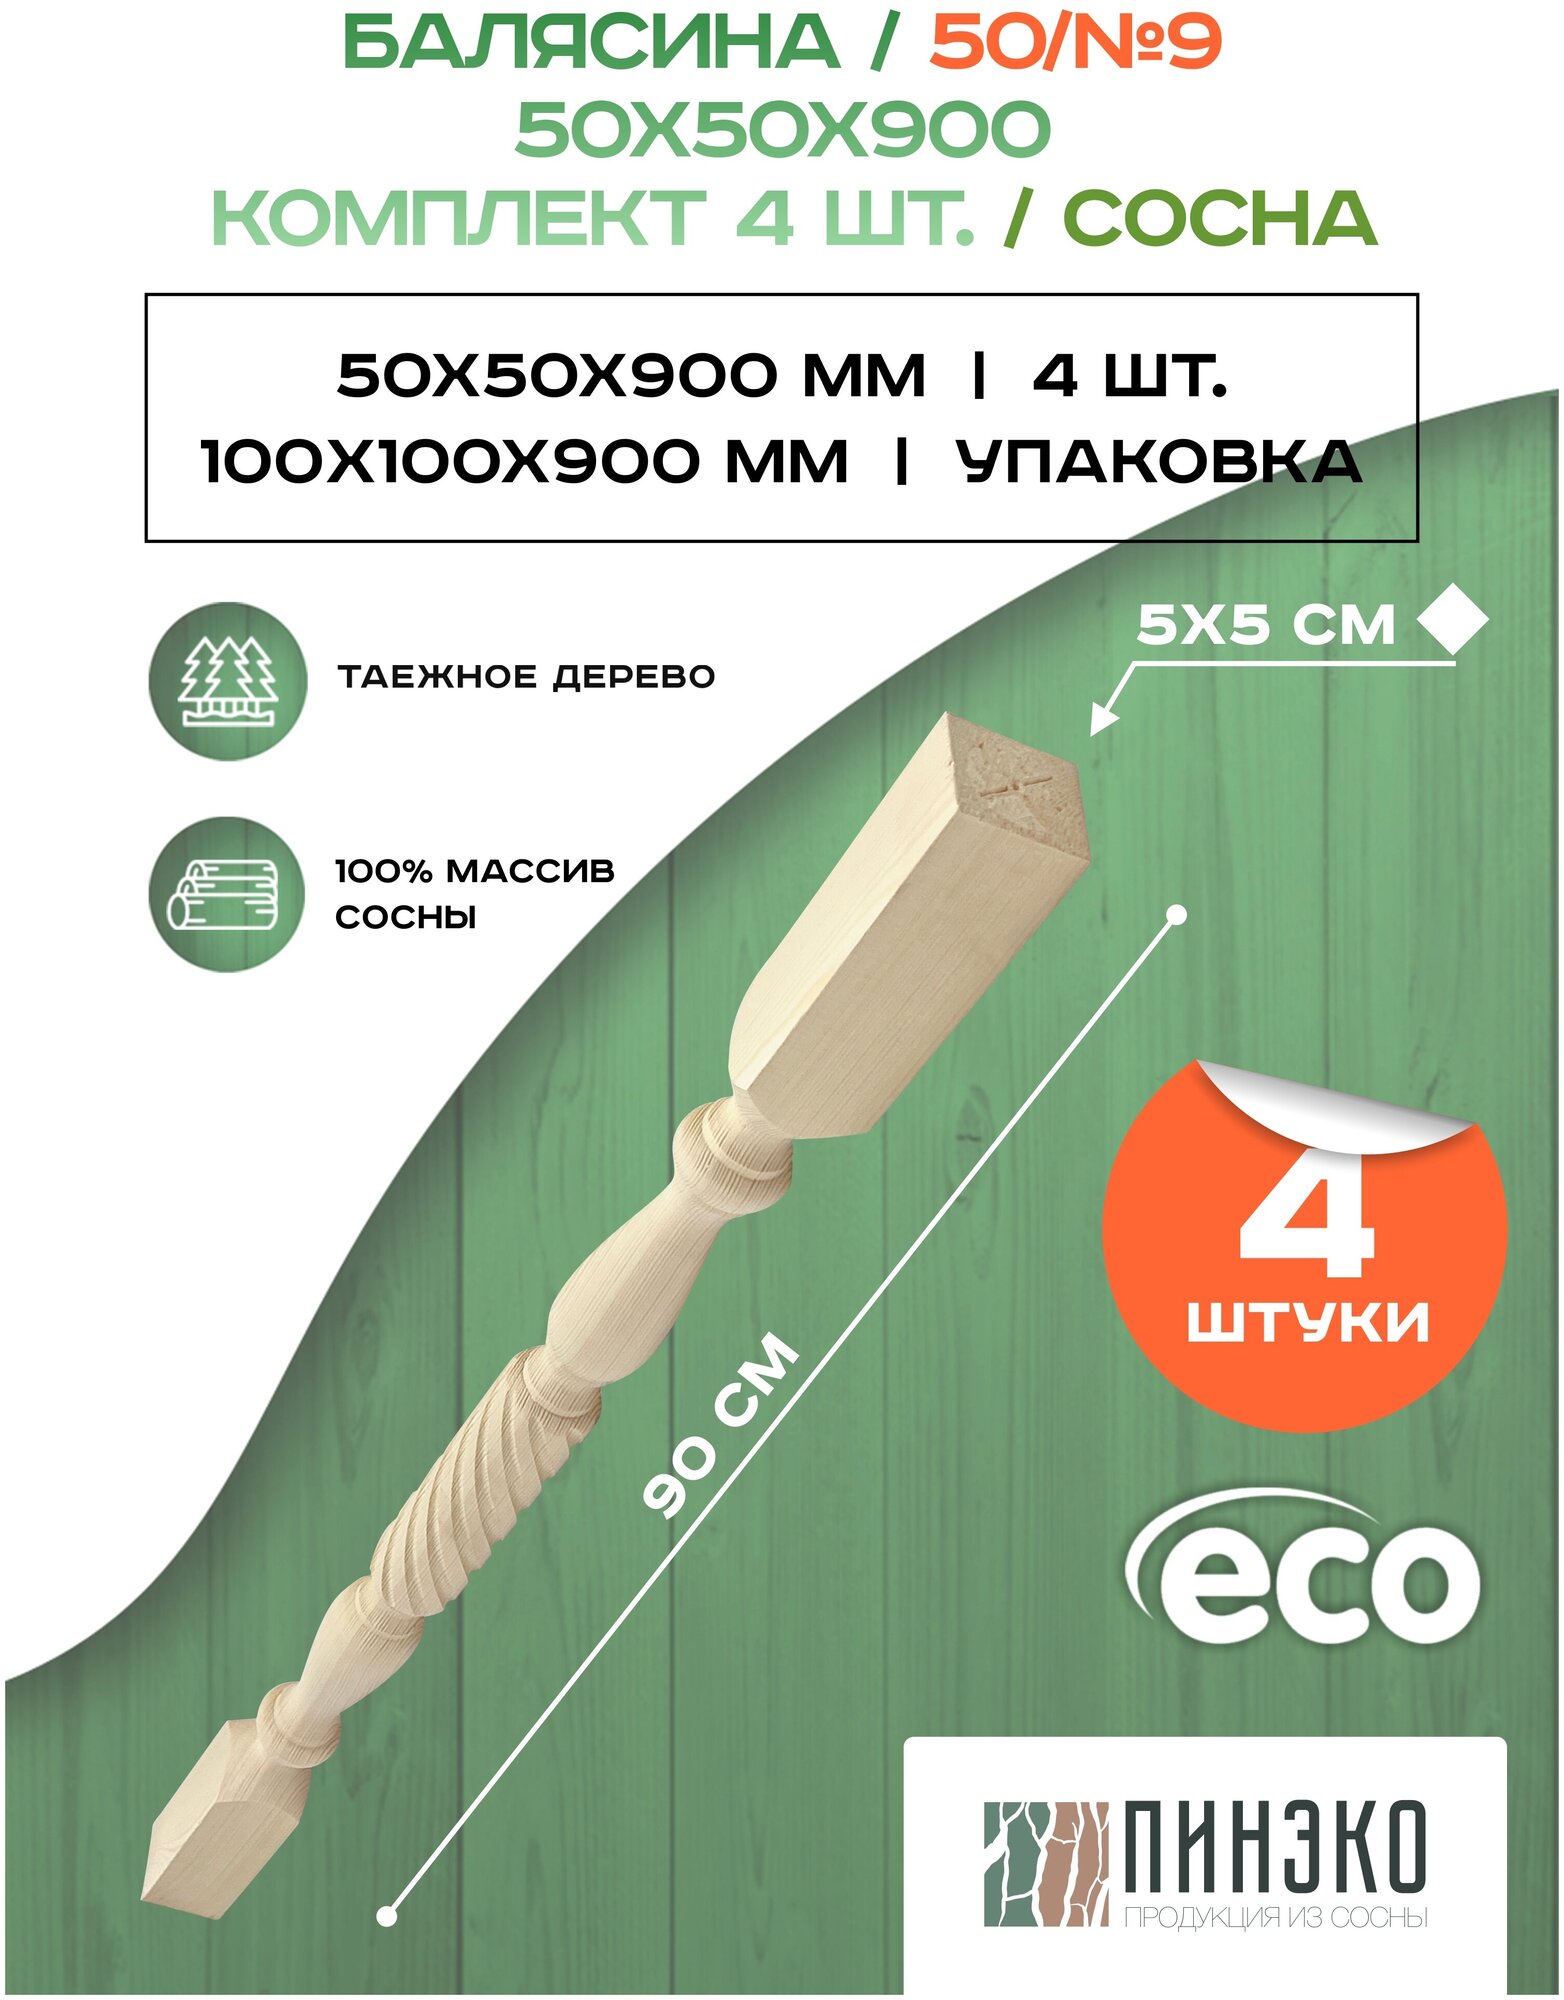 Набор 4 балясины деревянные 900х50х50мм / сращенная / ограждение для лестницы балюстрада из сосны премиум АА модель 50AN9 - фотография № 2